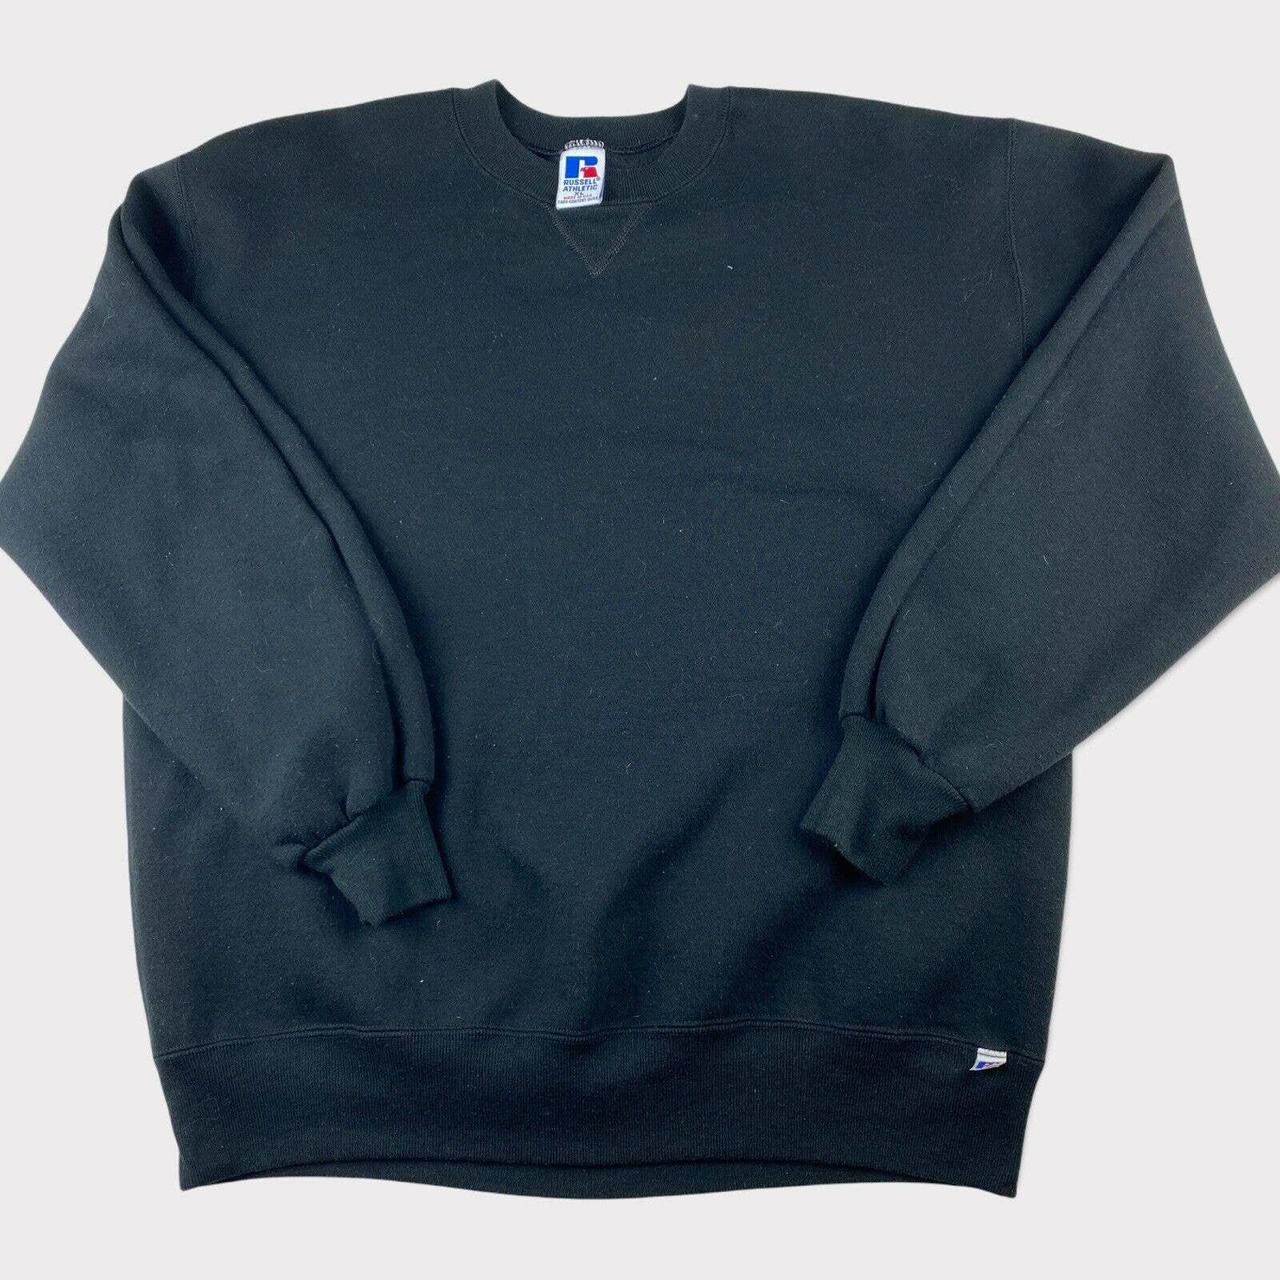 Vintage Russell Athletic Black Sweatshirt Made in... - Depop